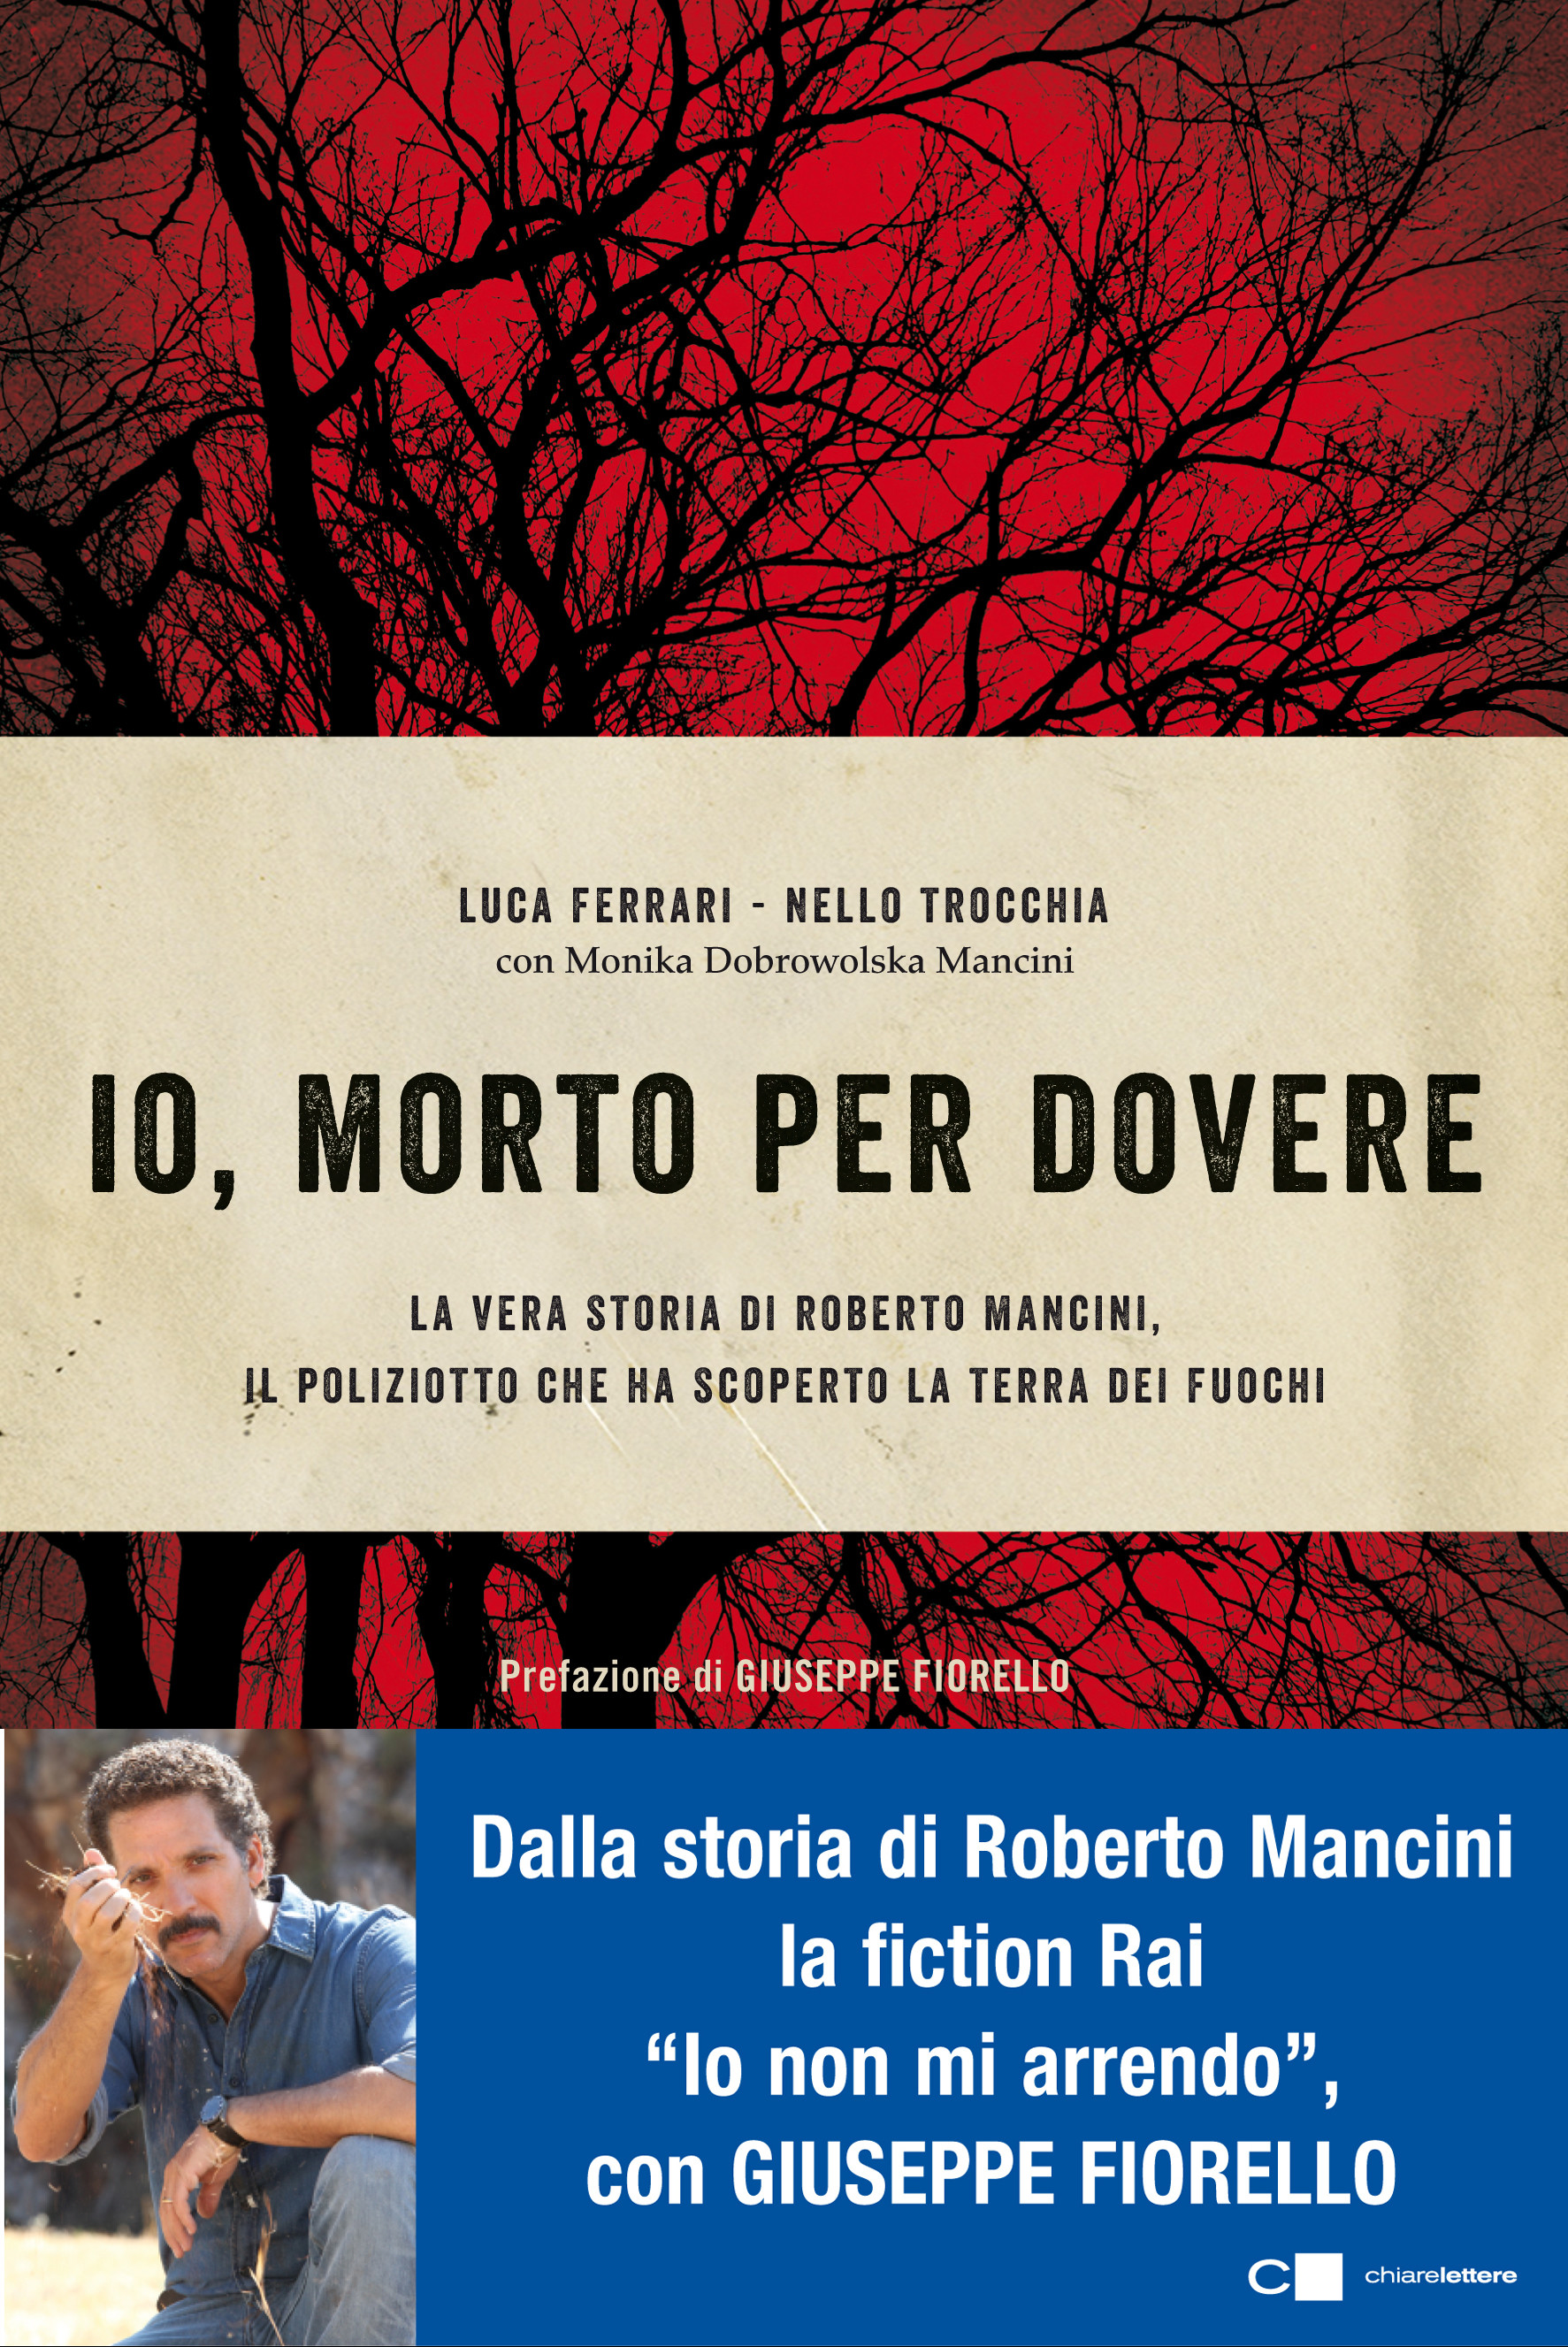 Io morto per dovere, biografia di Roberto Mancini, il poliziotto che scoprì la Terra dei Fuochi